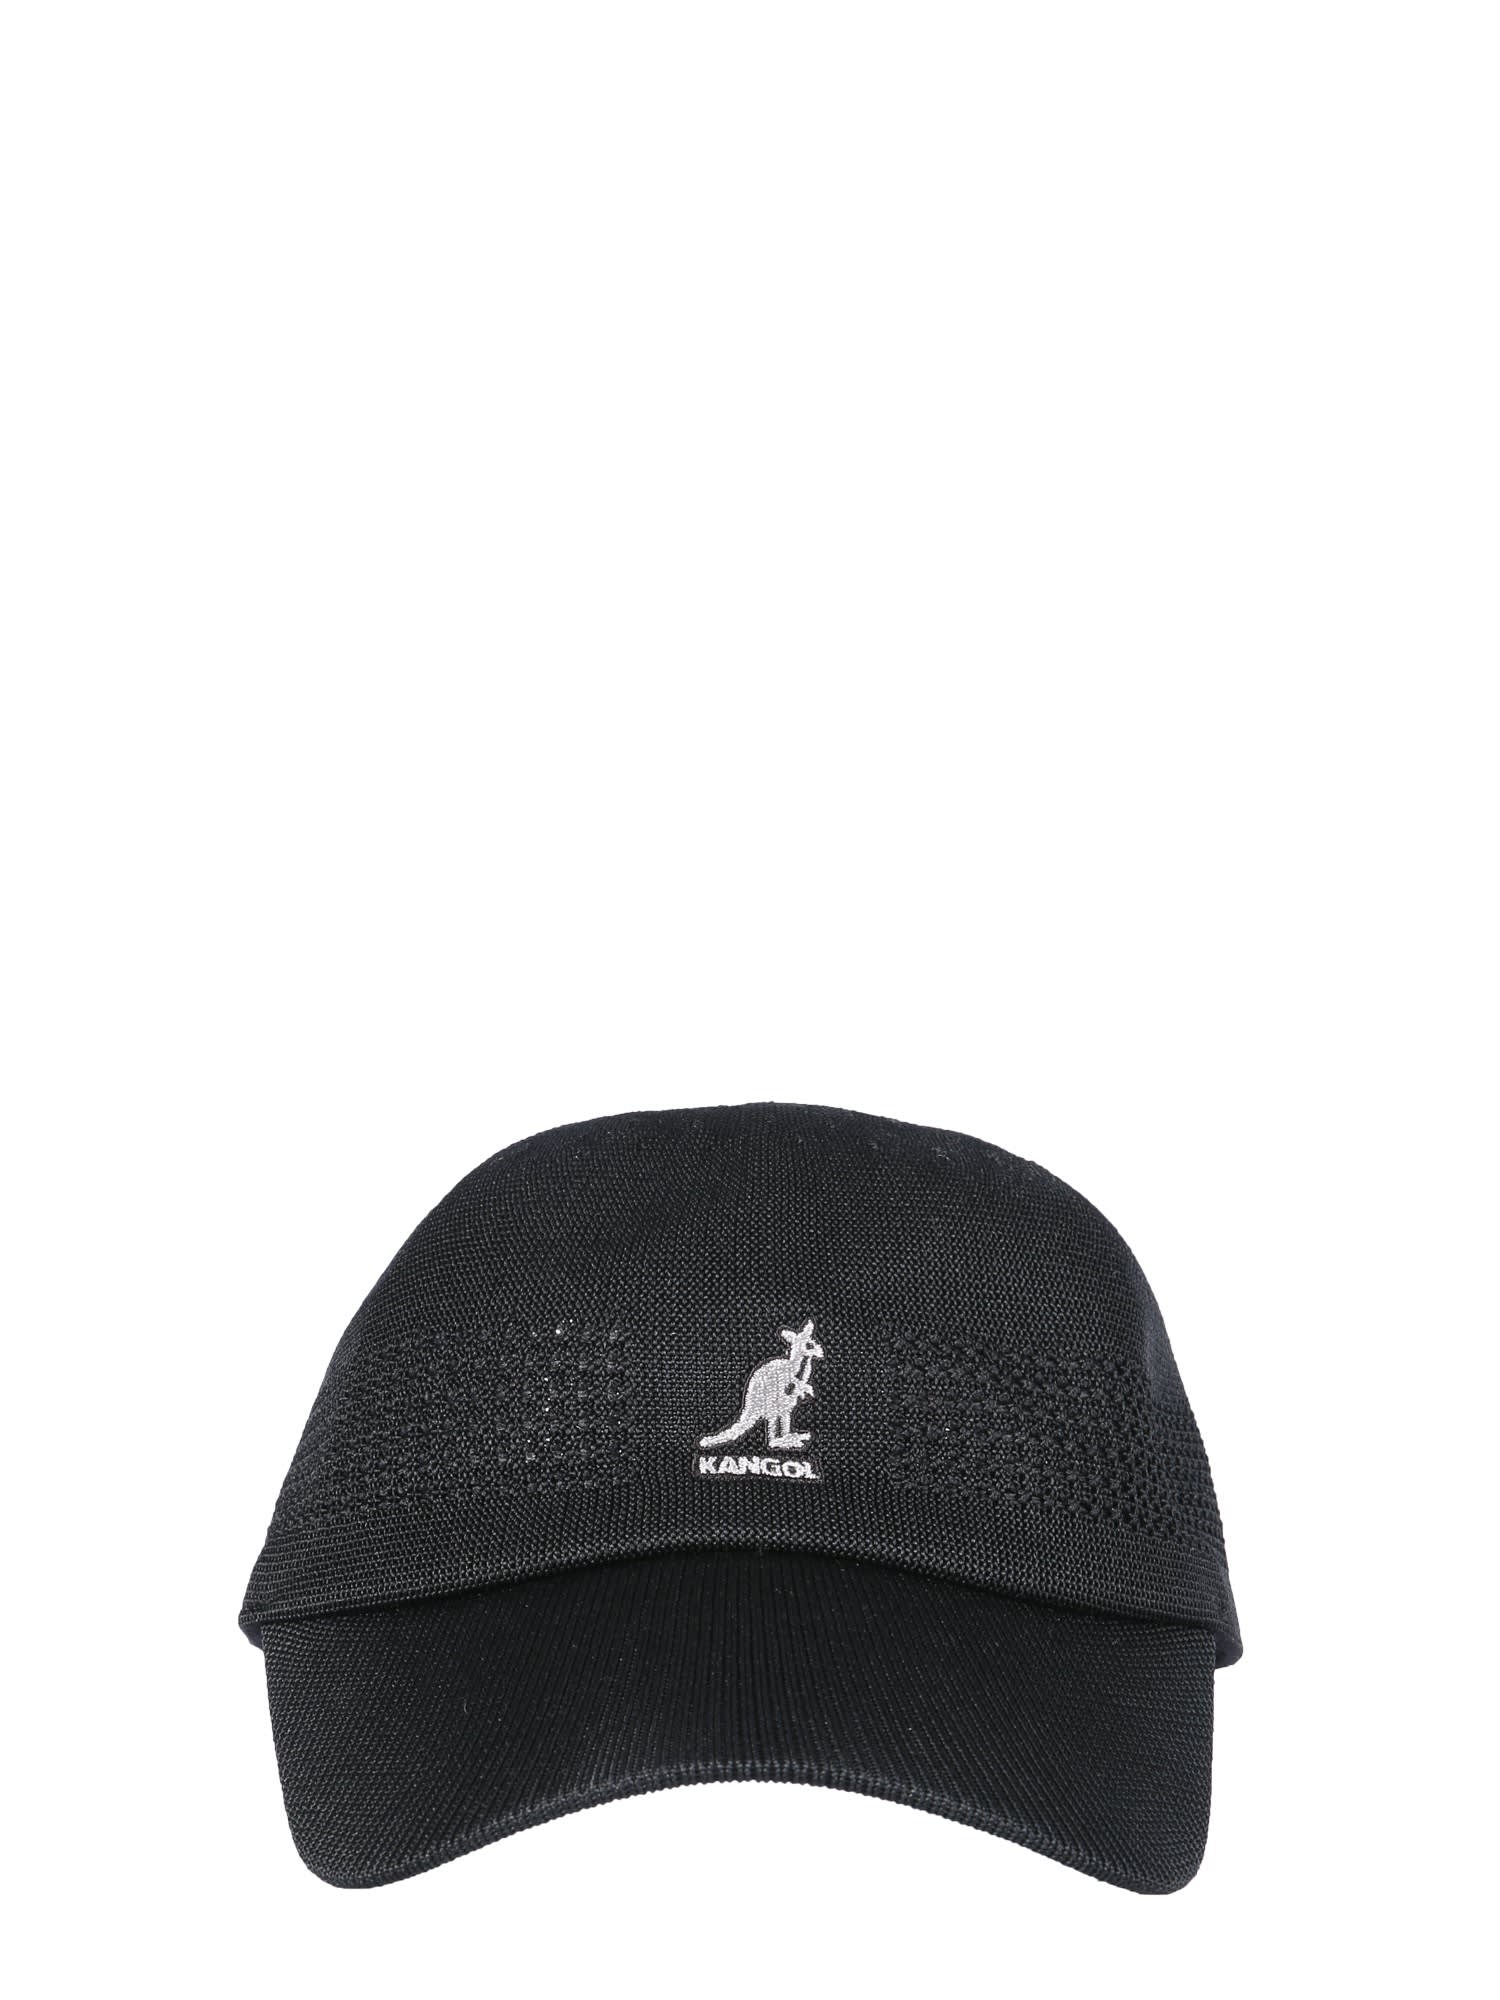 Kangol Tropic Ventair Spacecap Hat